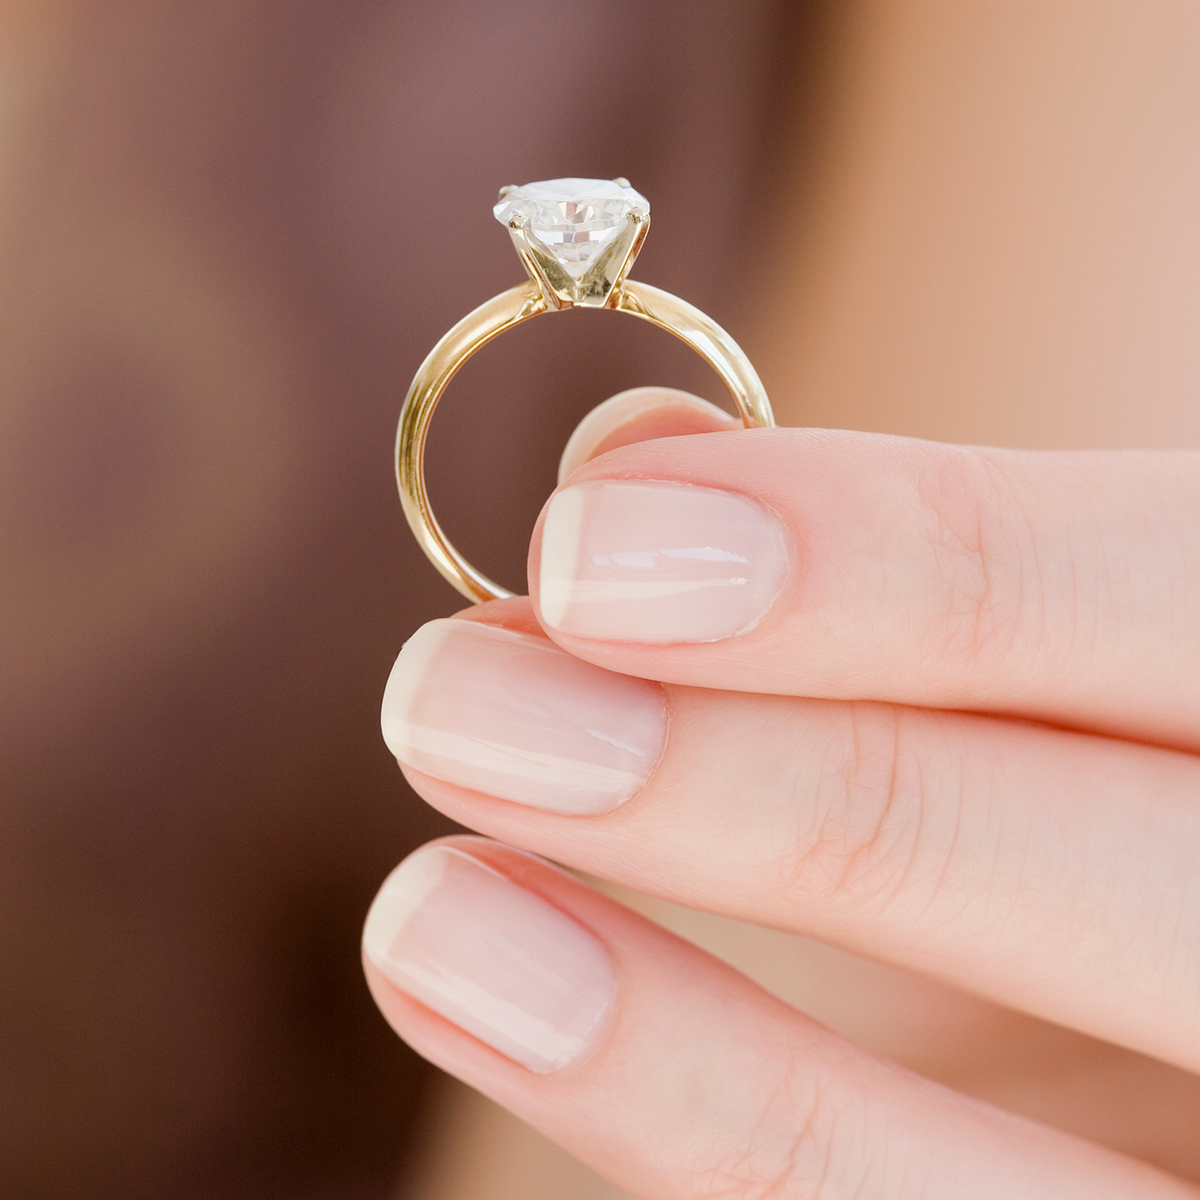 Engagement Rings For Men